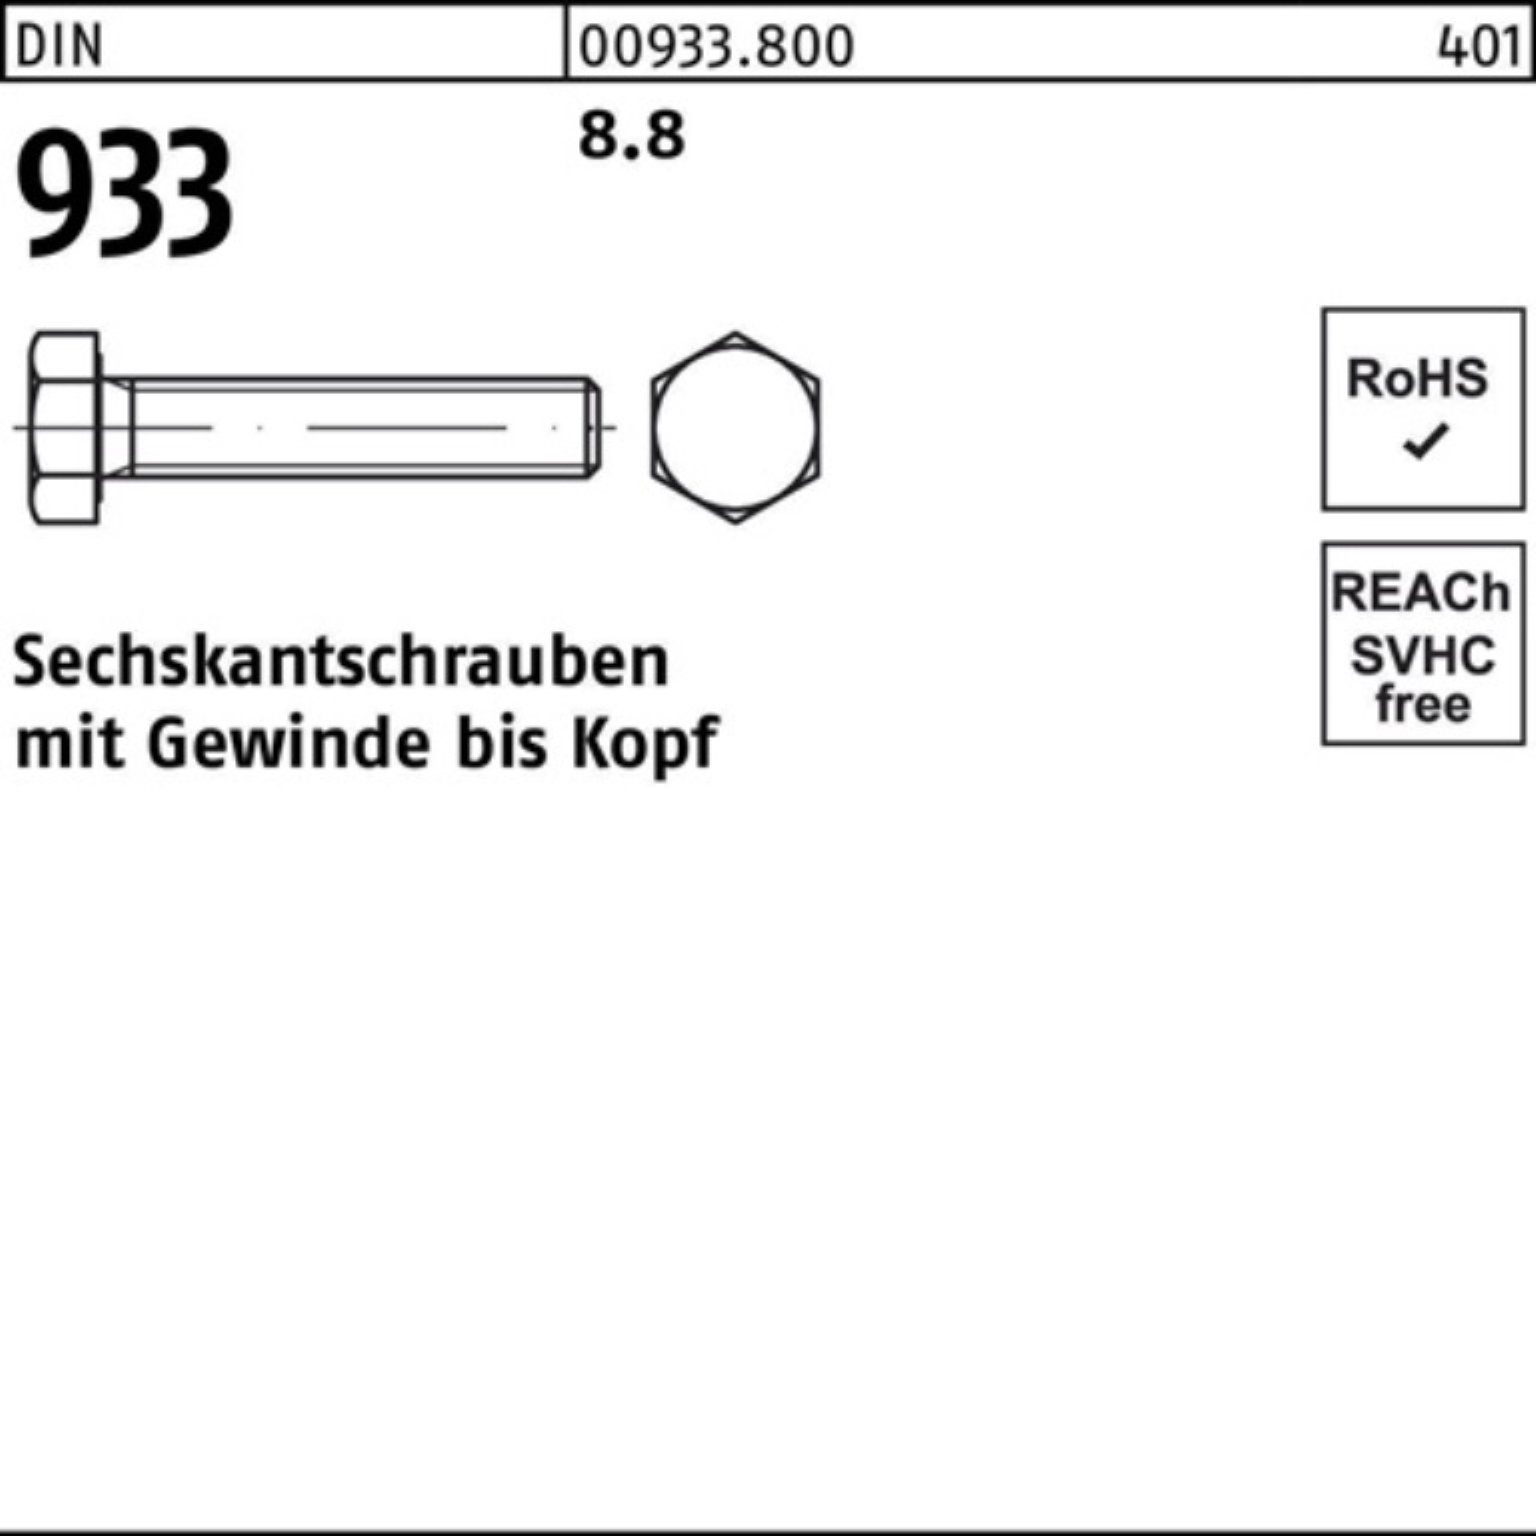 Sechskantschraube Reyher 933 VG 100 100er 933 M14x DIN Pack Sechskantschraube 50 Stück DIN 8.8